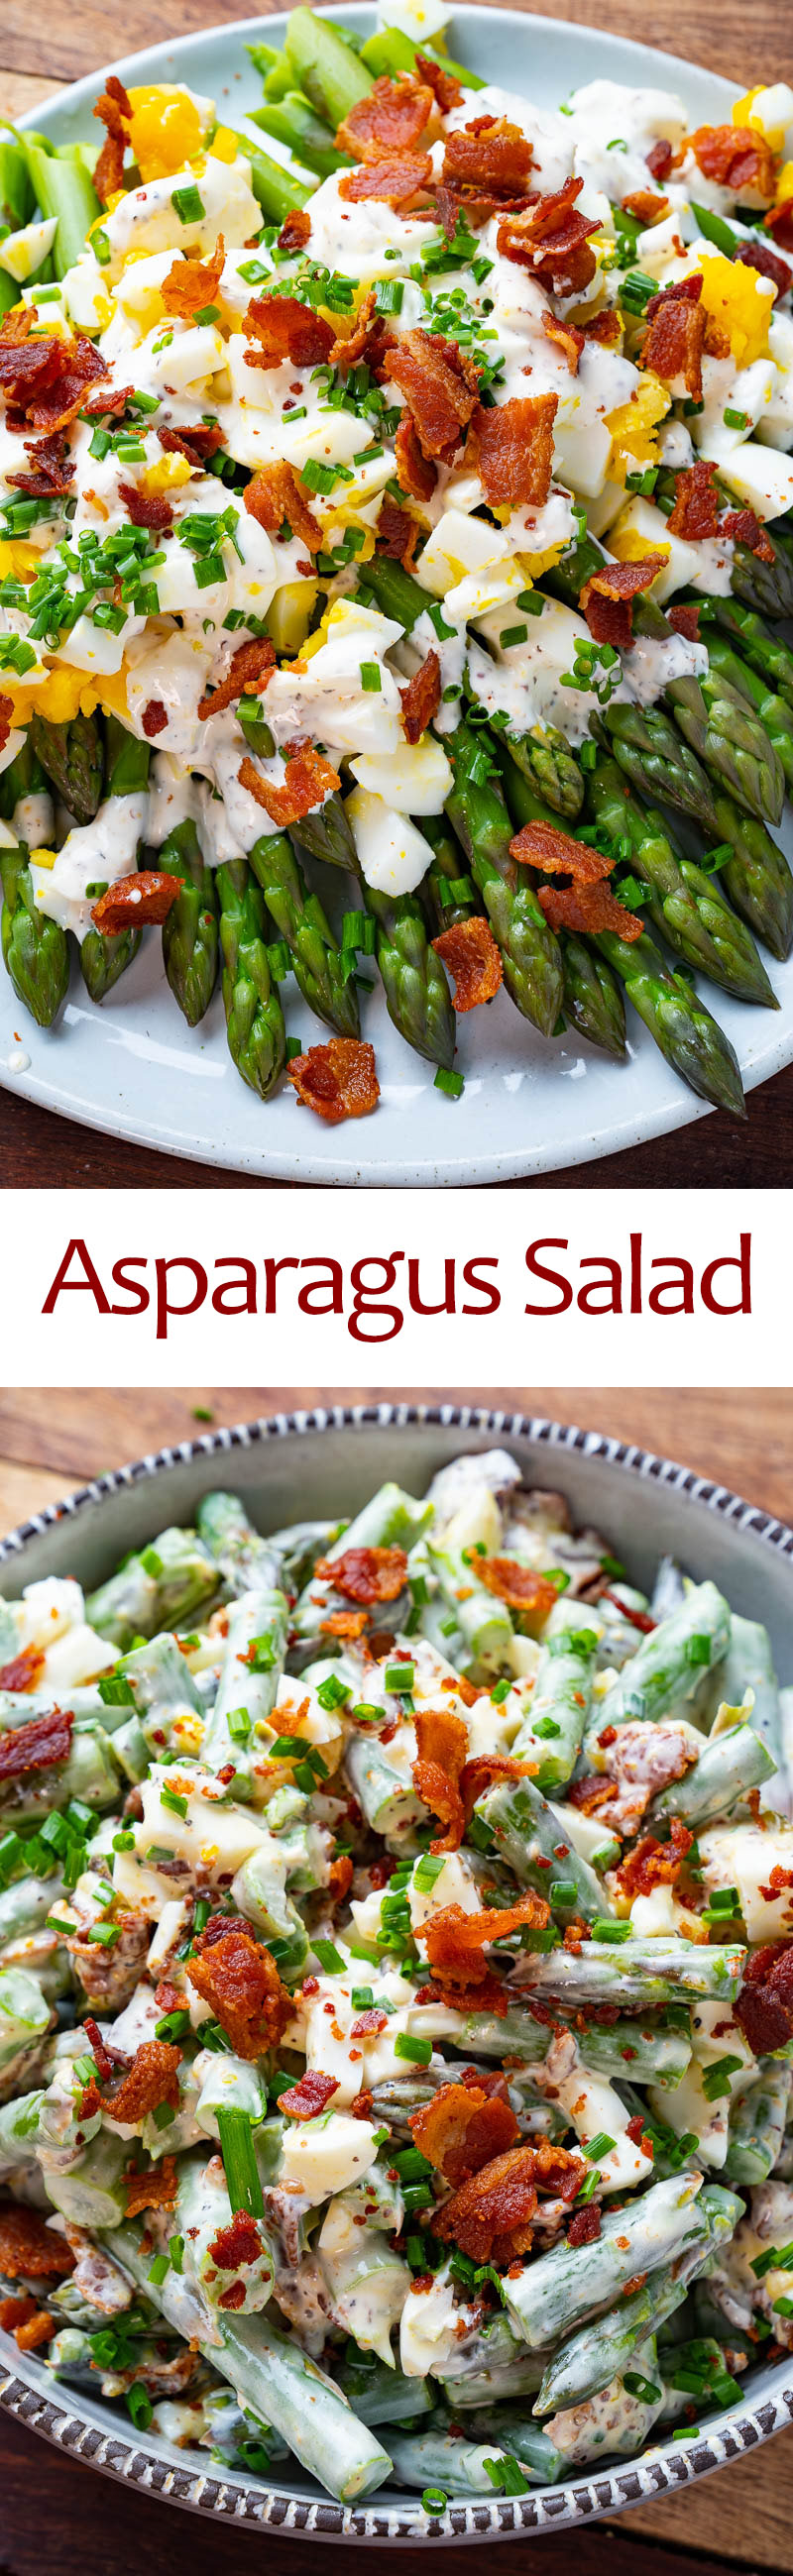 Asparagus Bacon and Egg Salad